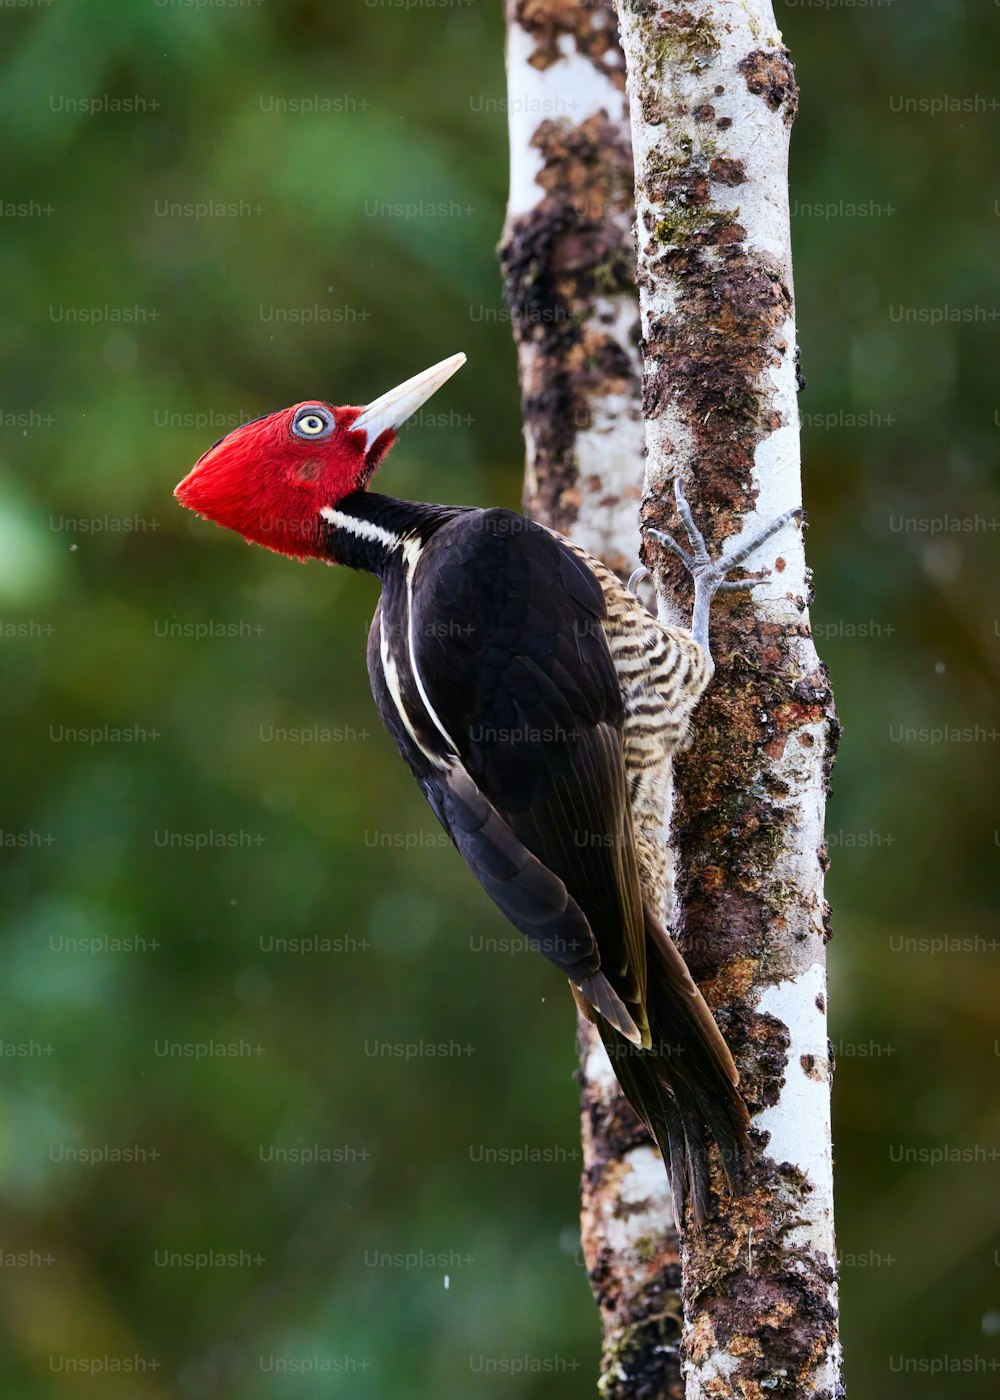 Un oiseau rouge et noir se tient sur un arbre